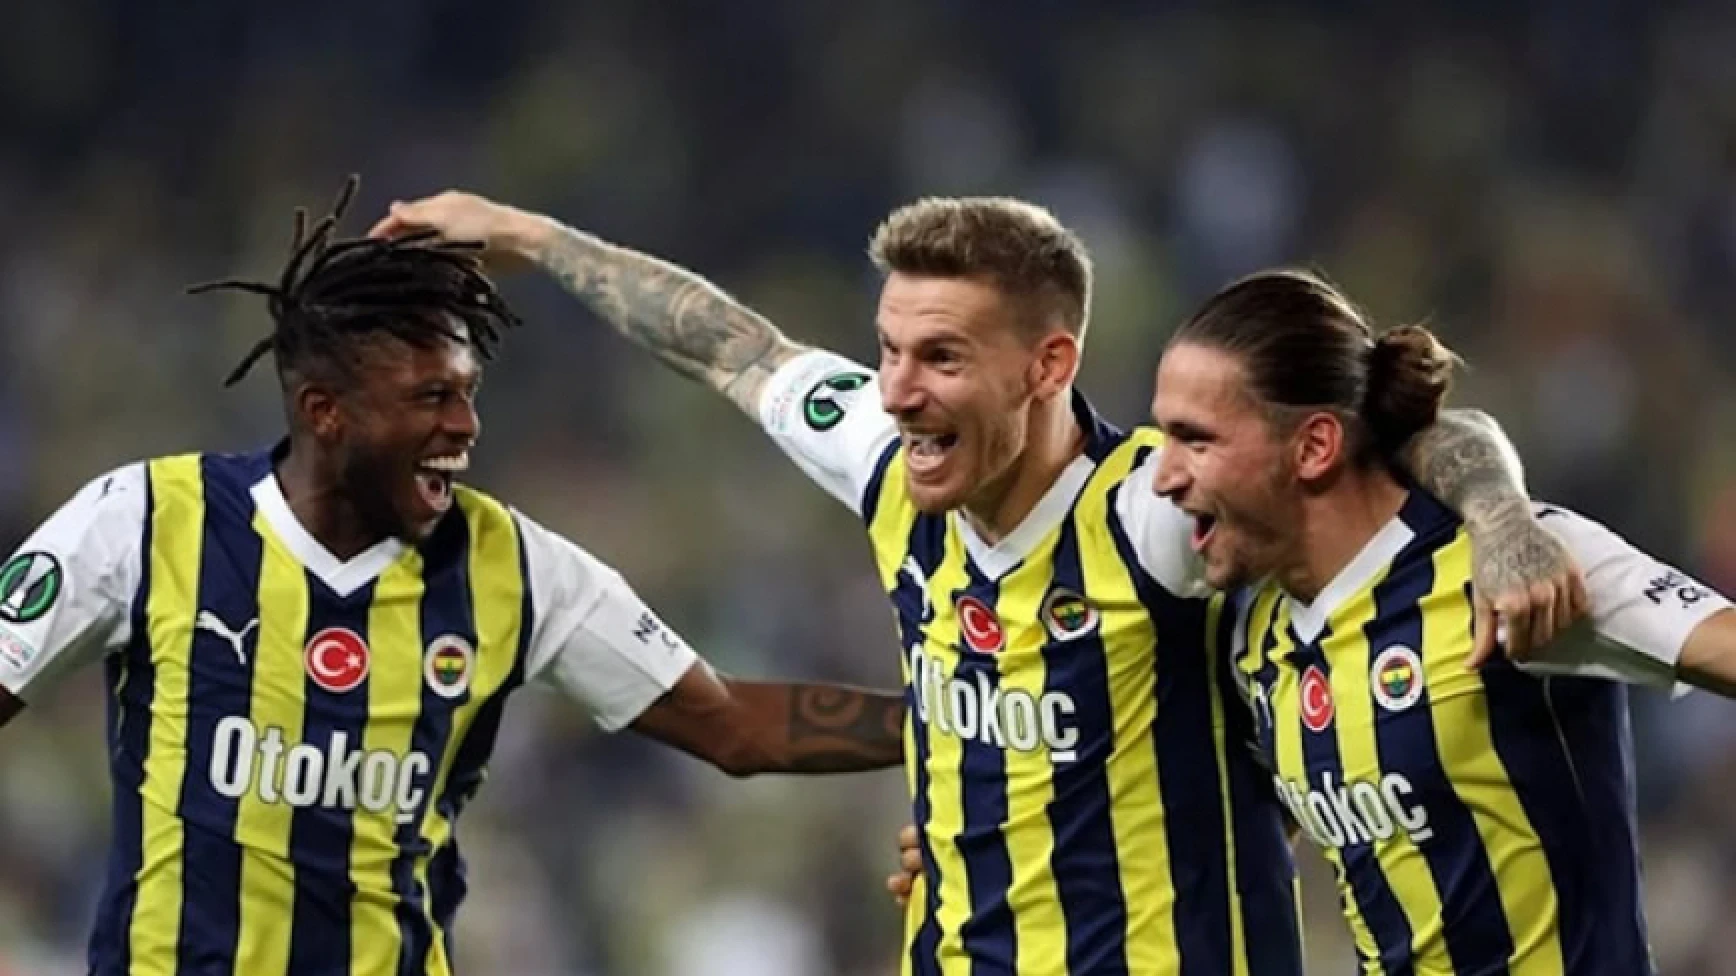 Fenerbahçe, Nordsjaelland engelini rahat geçti: 3-1